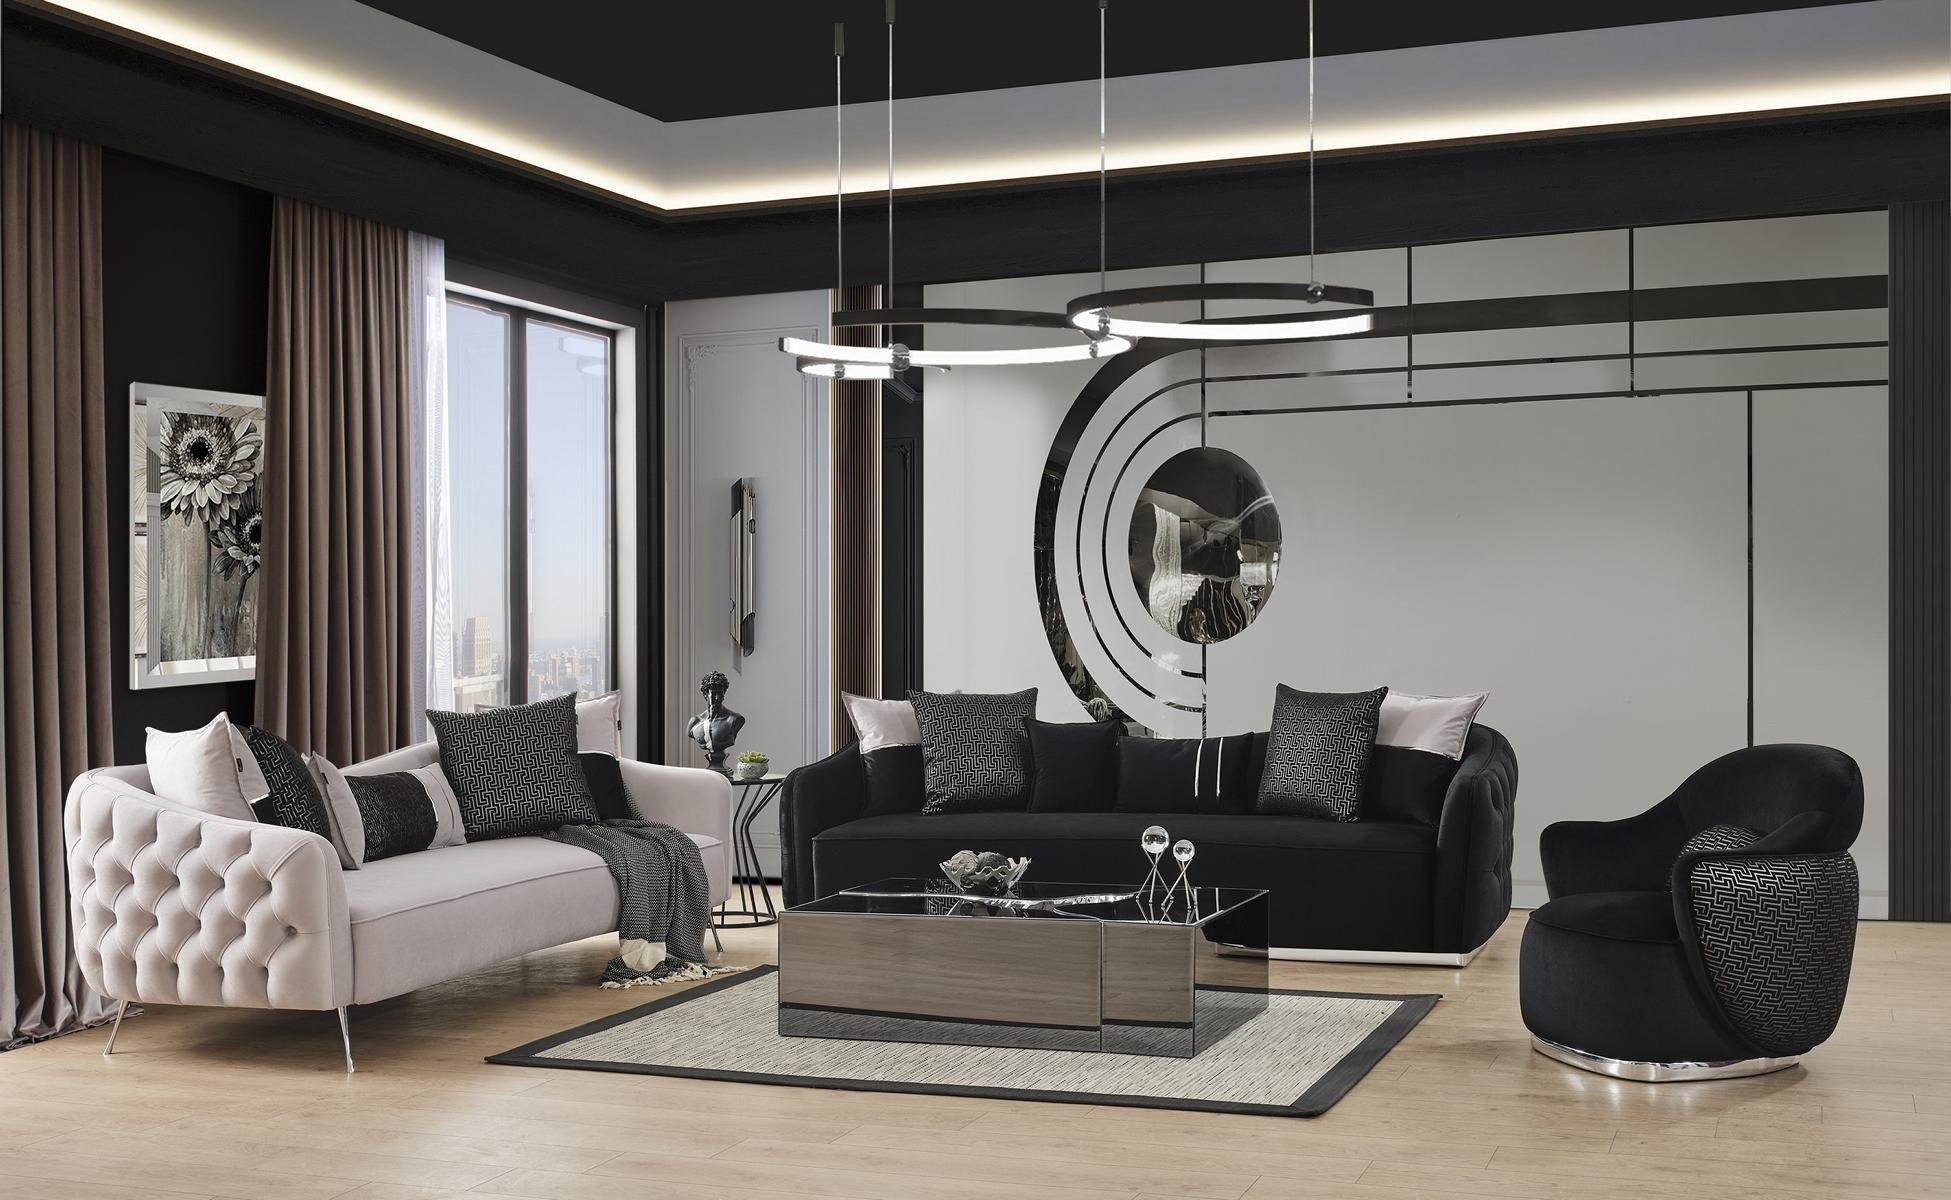 JVmoebel Couchtisch Couchtisch Glas Design Modern Luxus Möbel Neu Neu Wohnzimmer